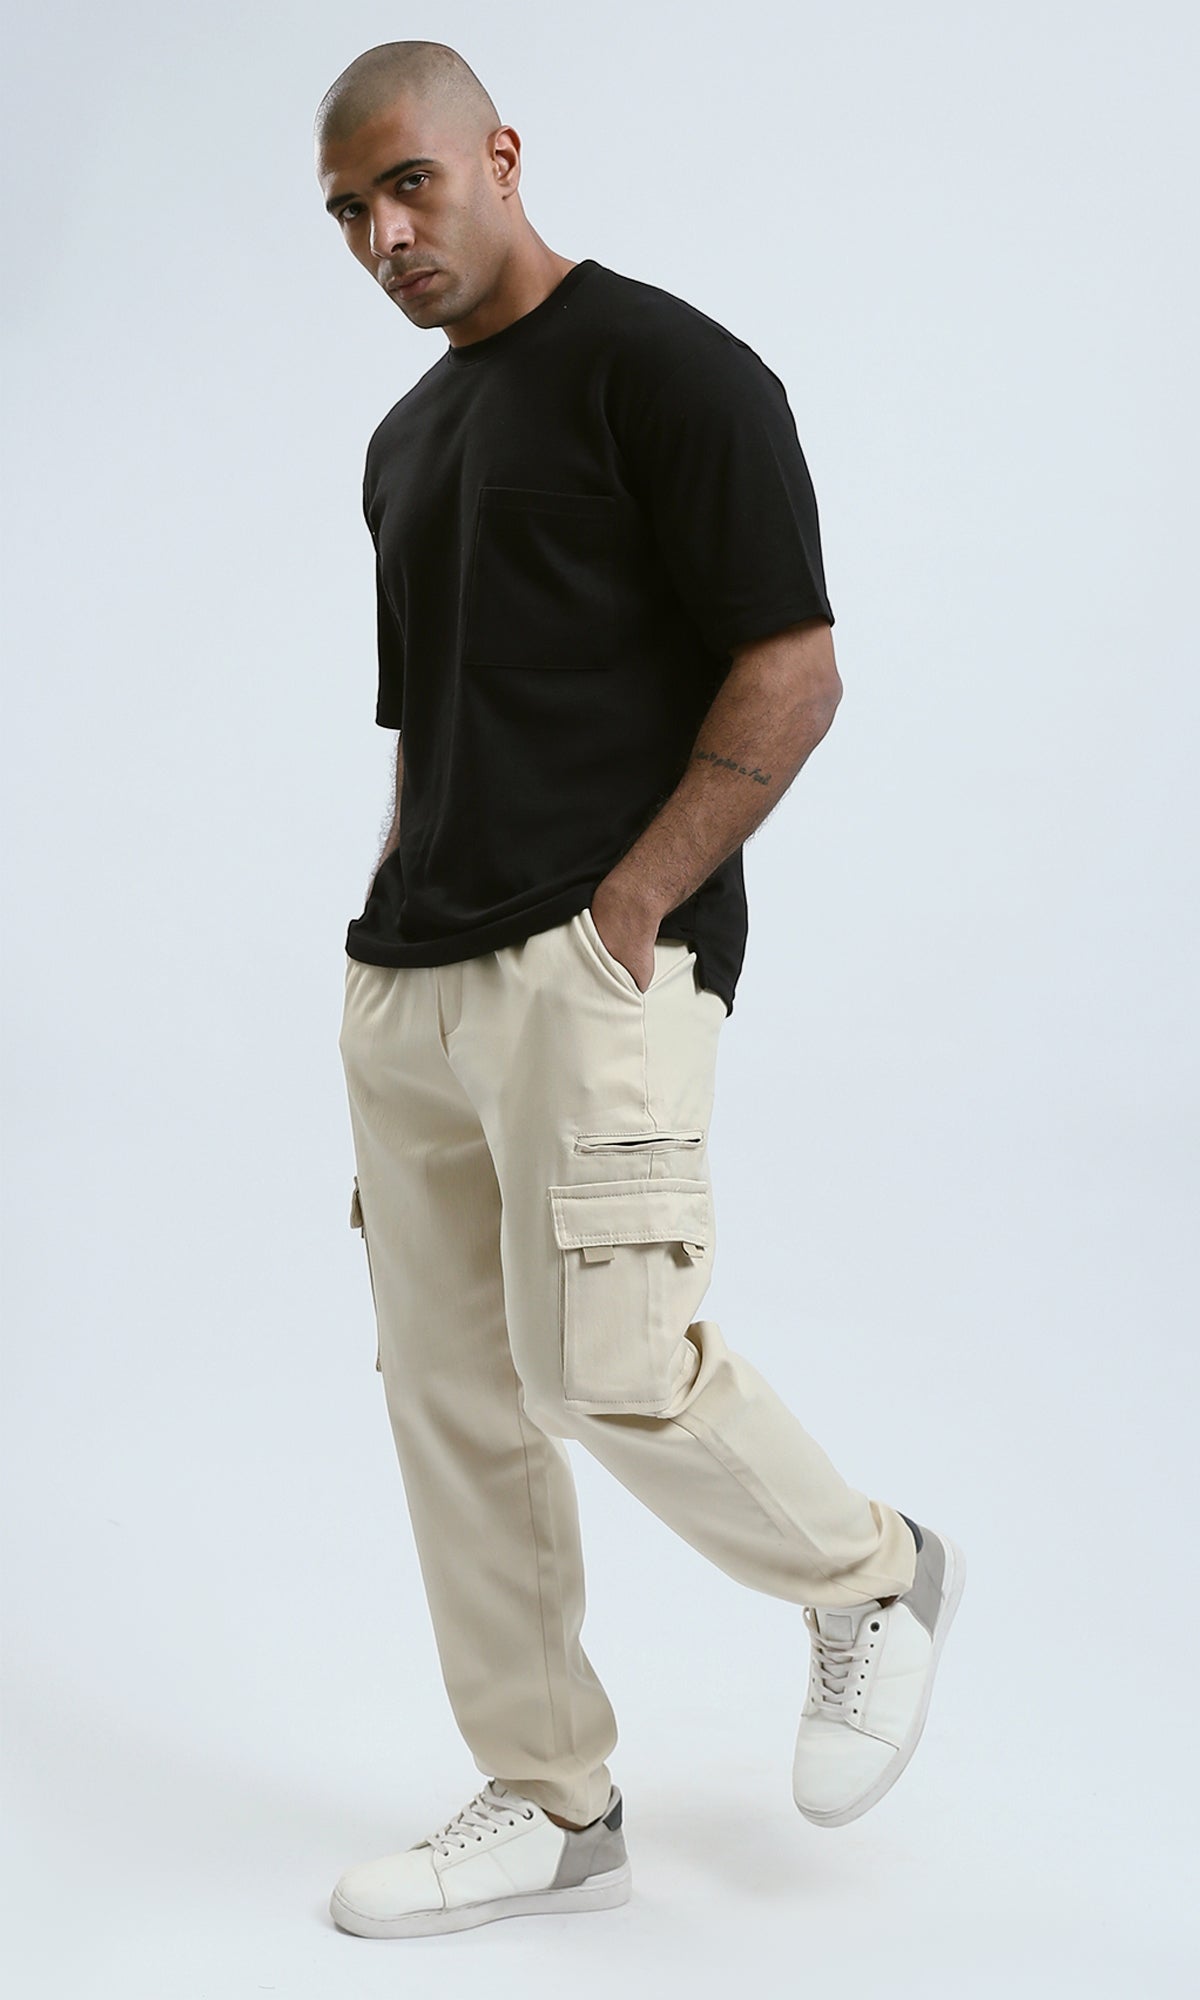 O174043 Light Beige Regular Fit Jogger Pants With Pockets